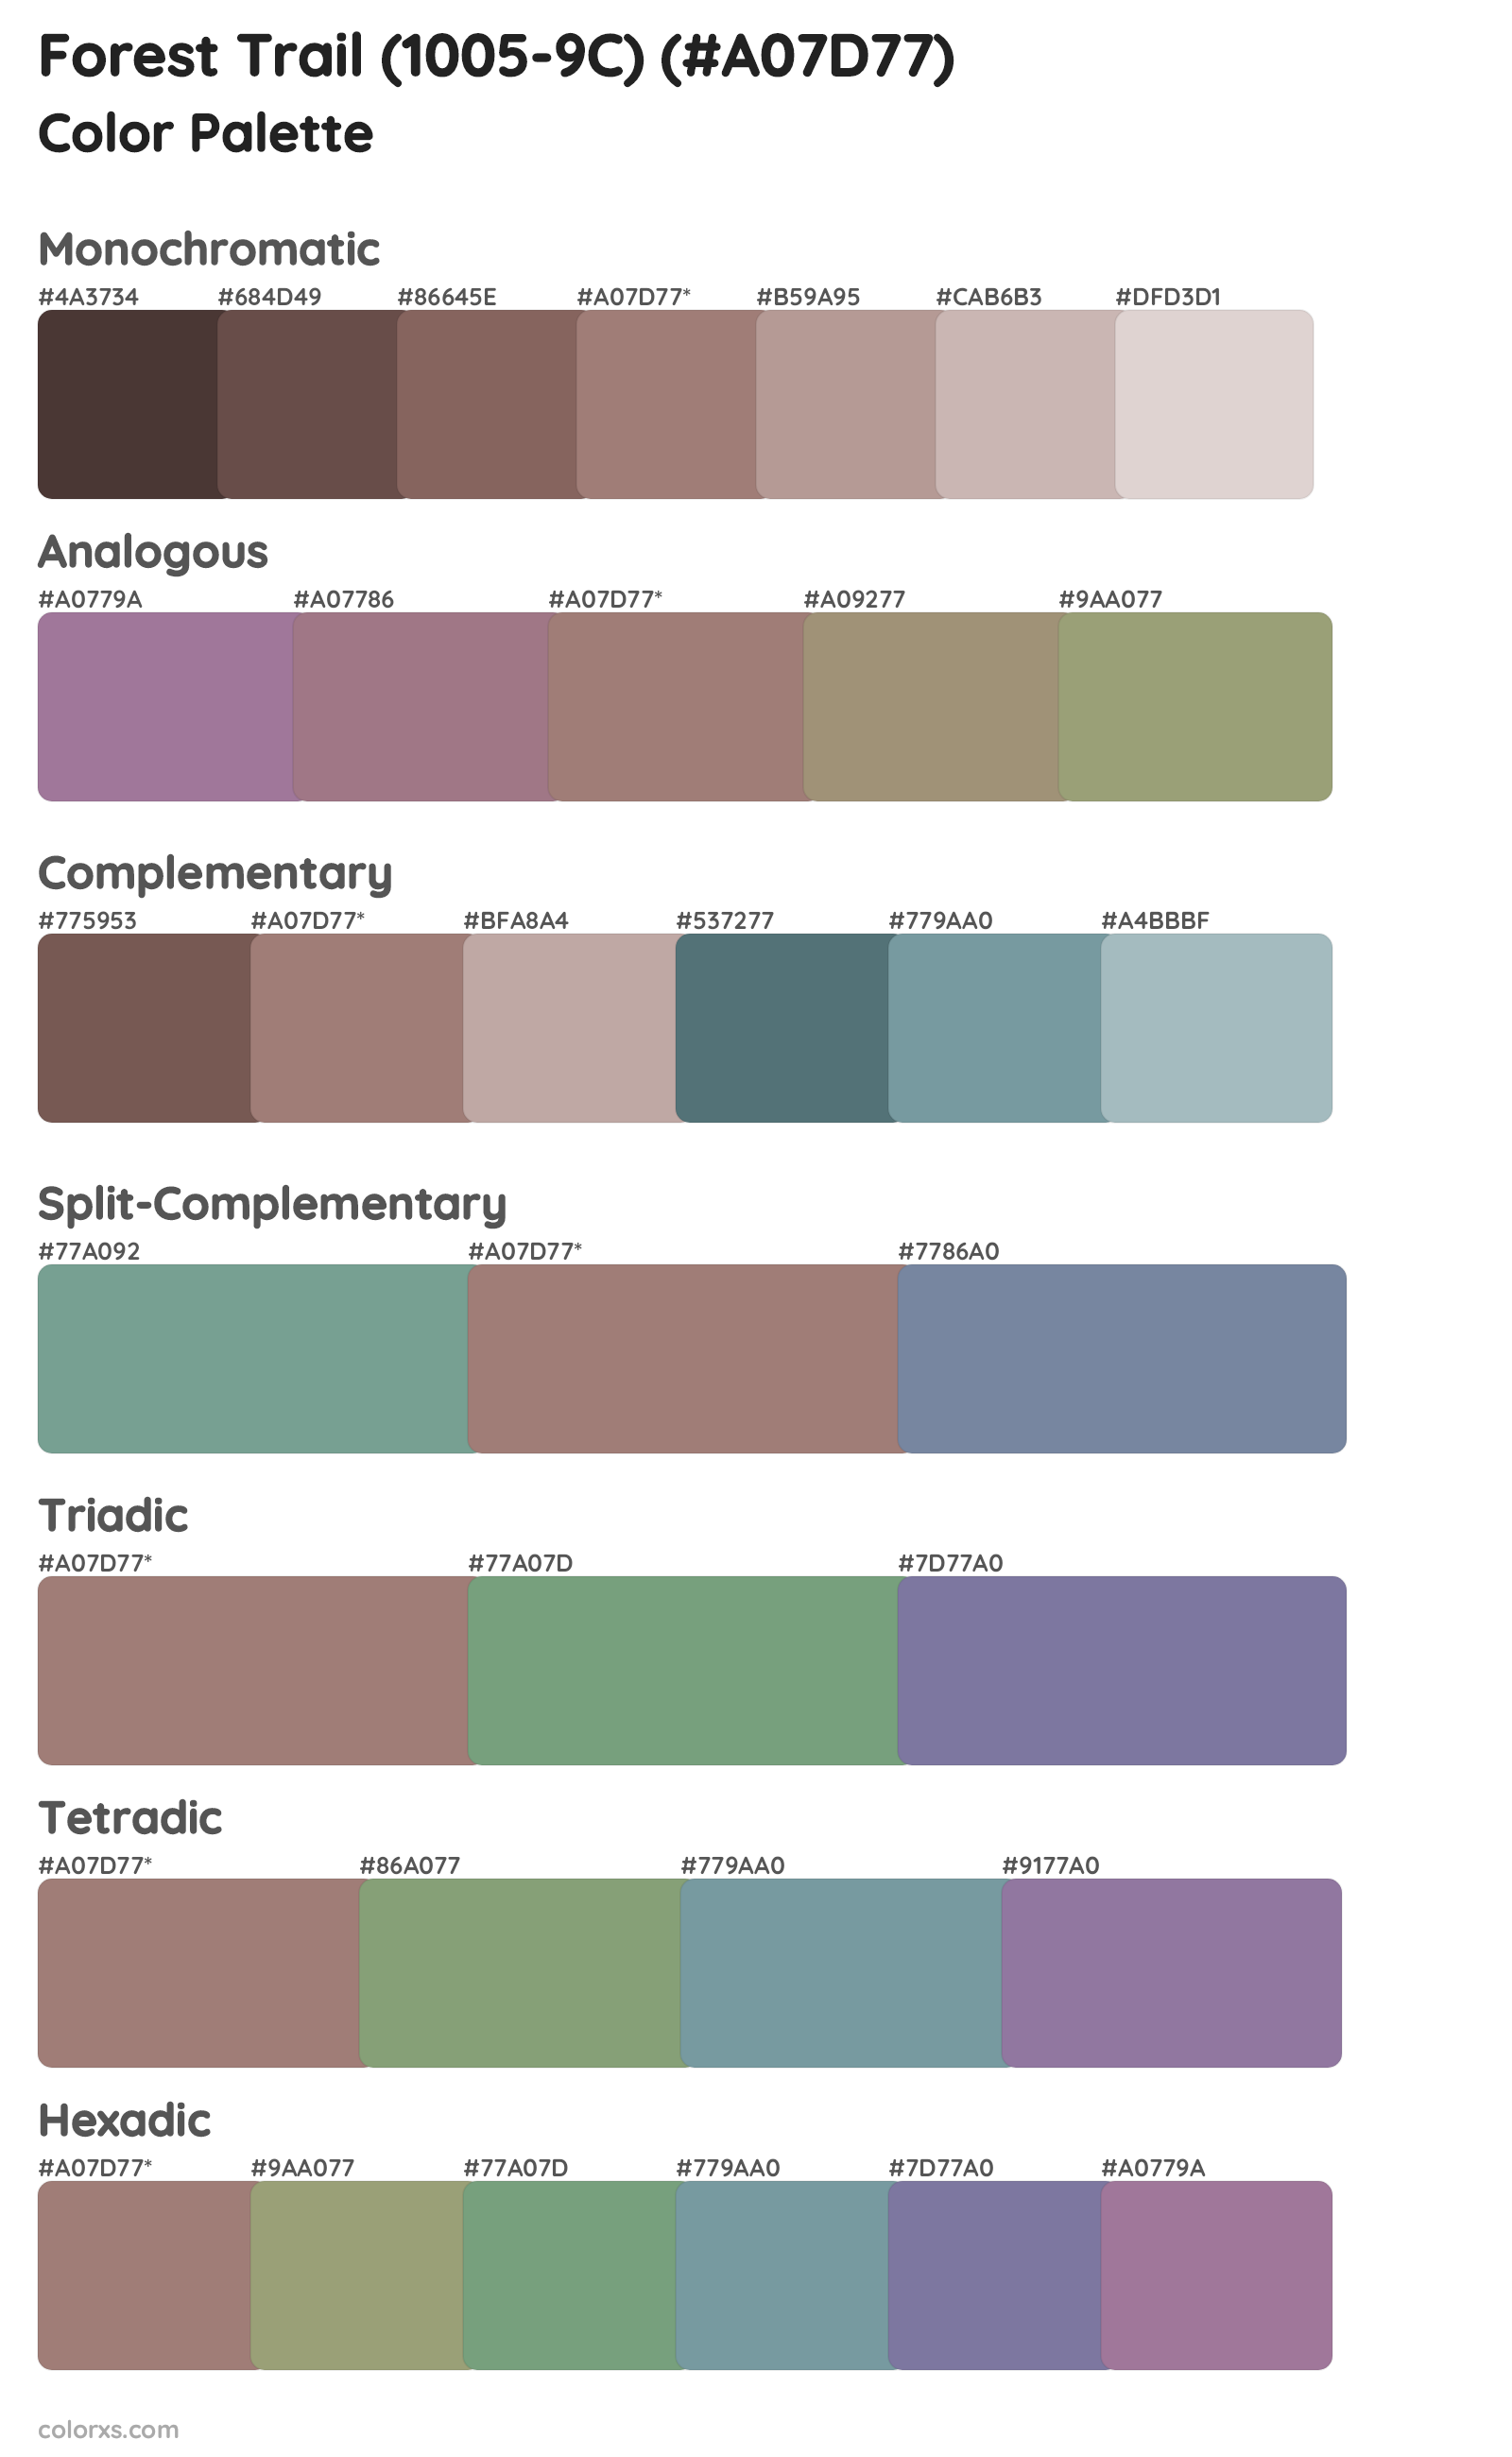 Forest Trail (1005-9C) Color Scheme Palettes